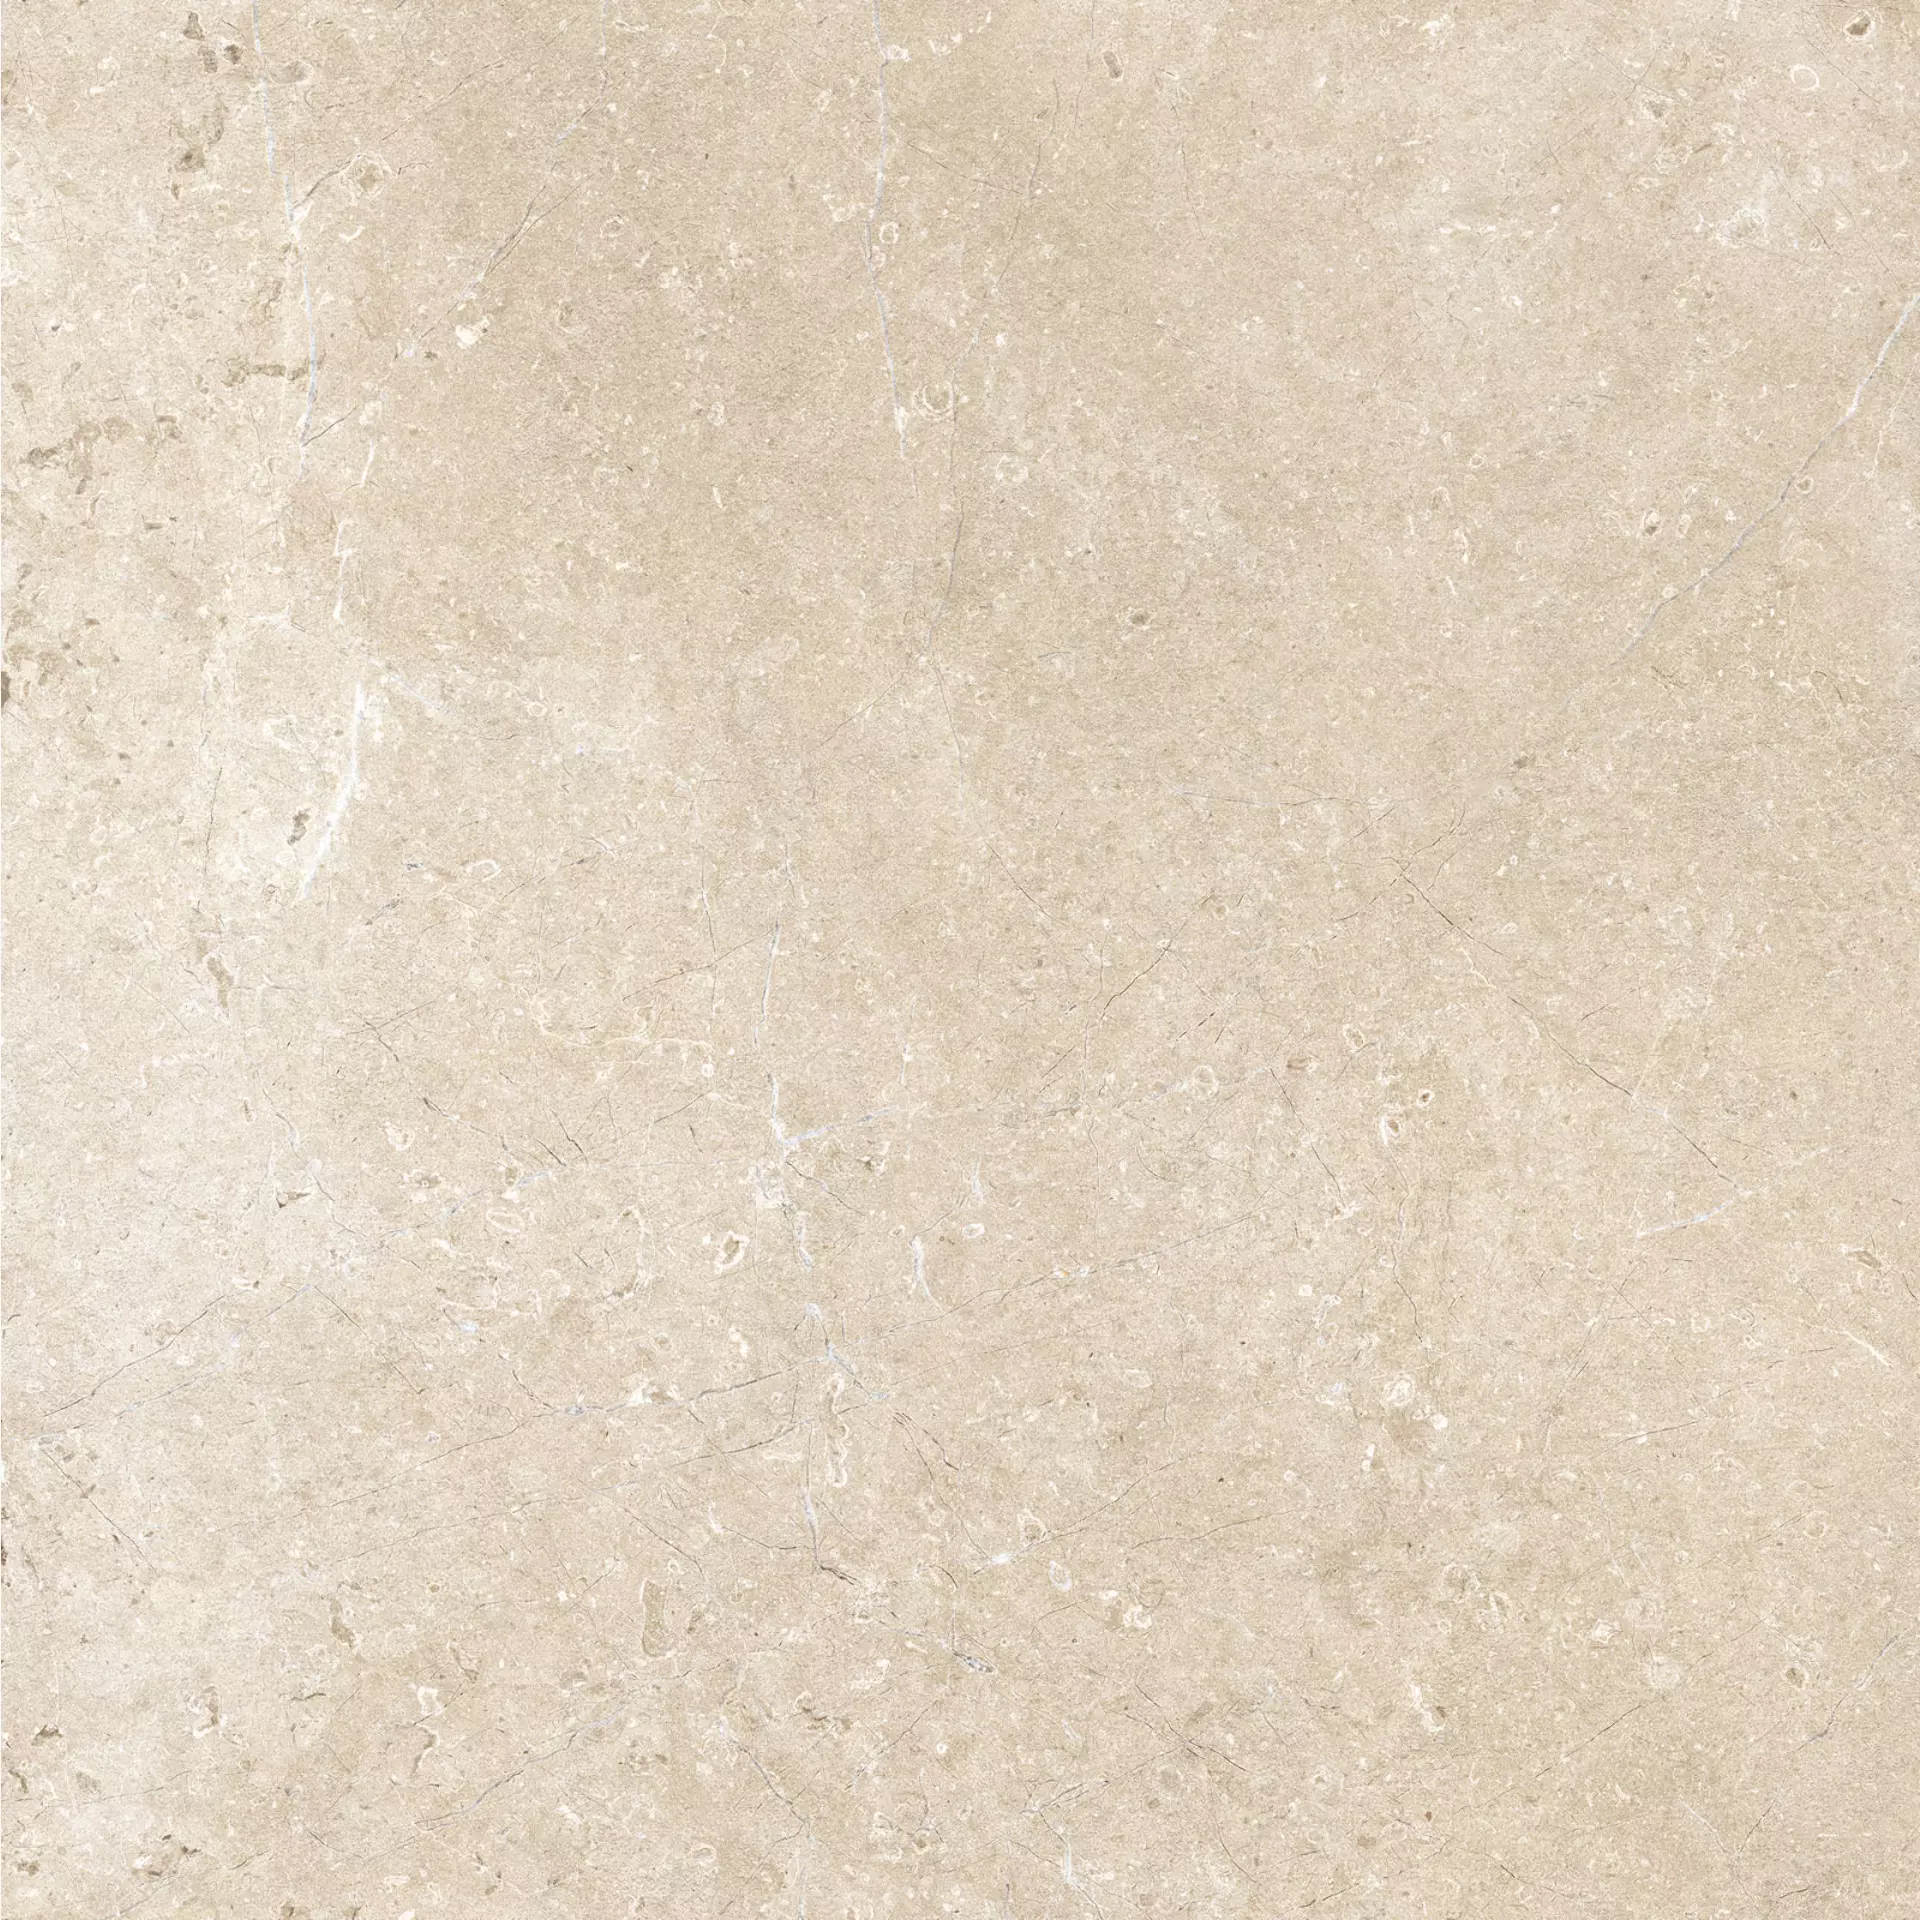 Marazzi Mystone Limestone Sand Strutturato M7EN 75x75cm rectified 9,5mm